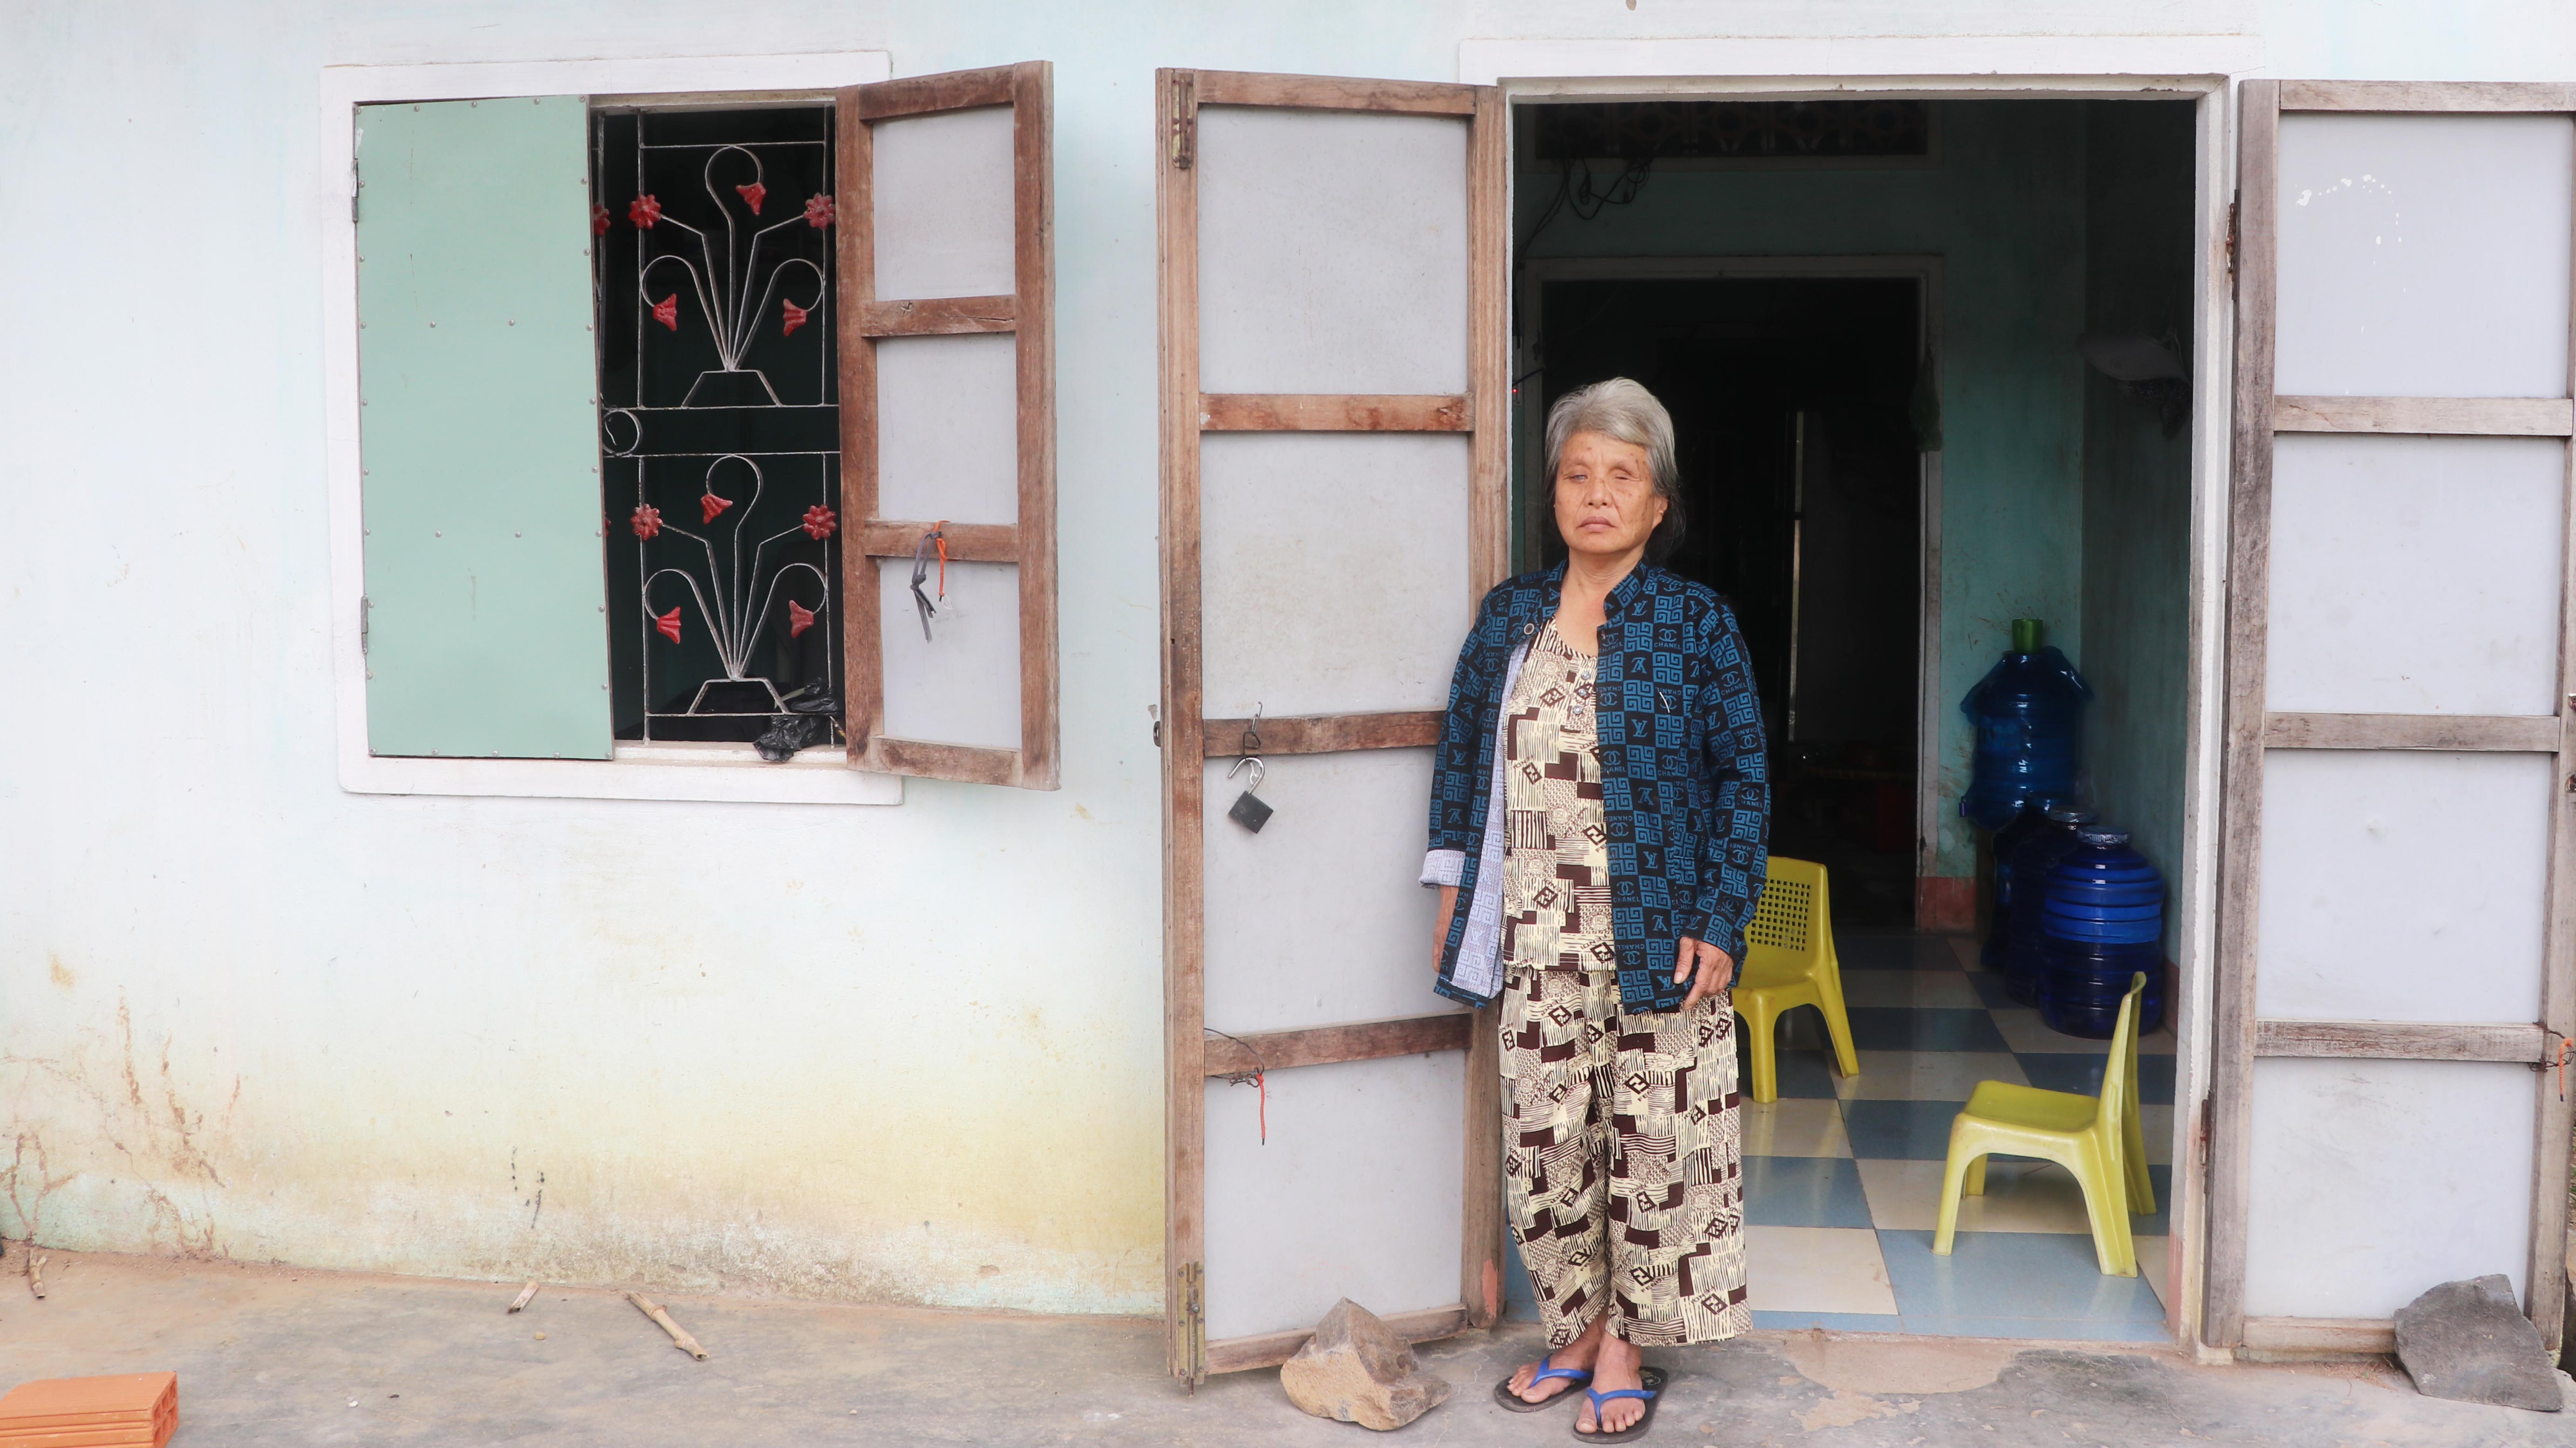 Bà Nguyễn Thị Xuân Khanh bên ngôi nhà nhỏ của mình. Ảnh: Ngọc Minh